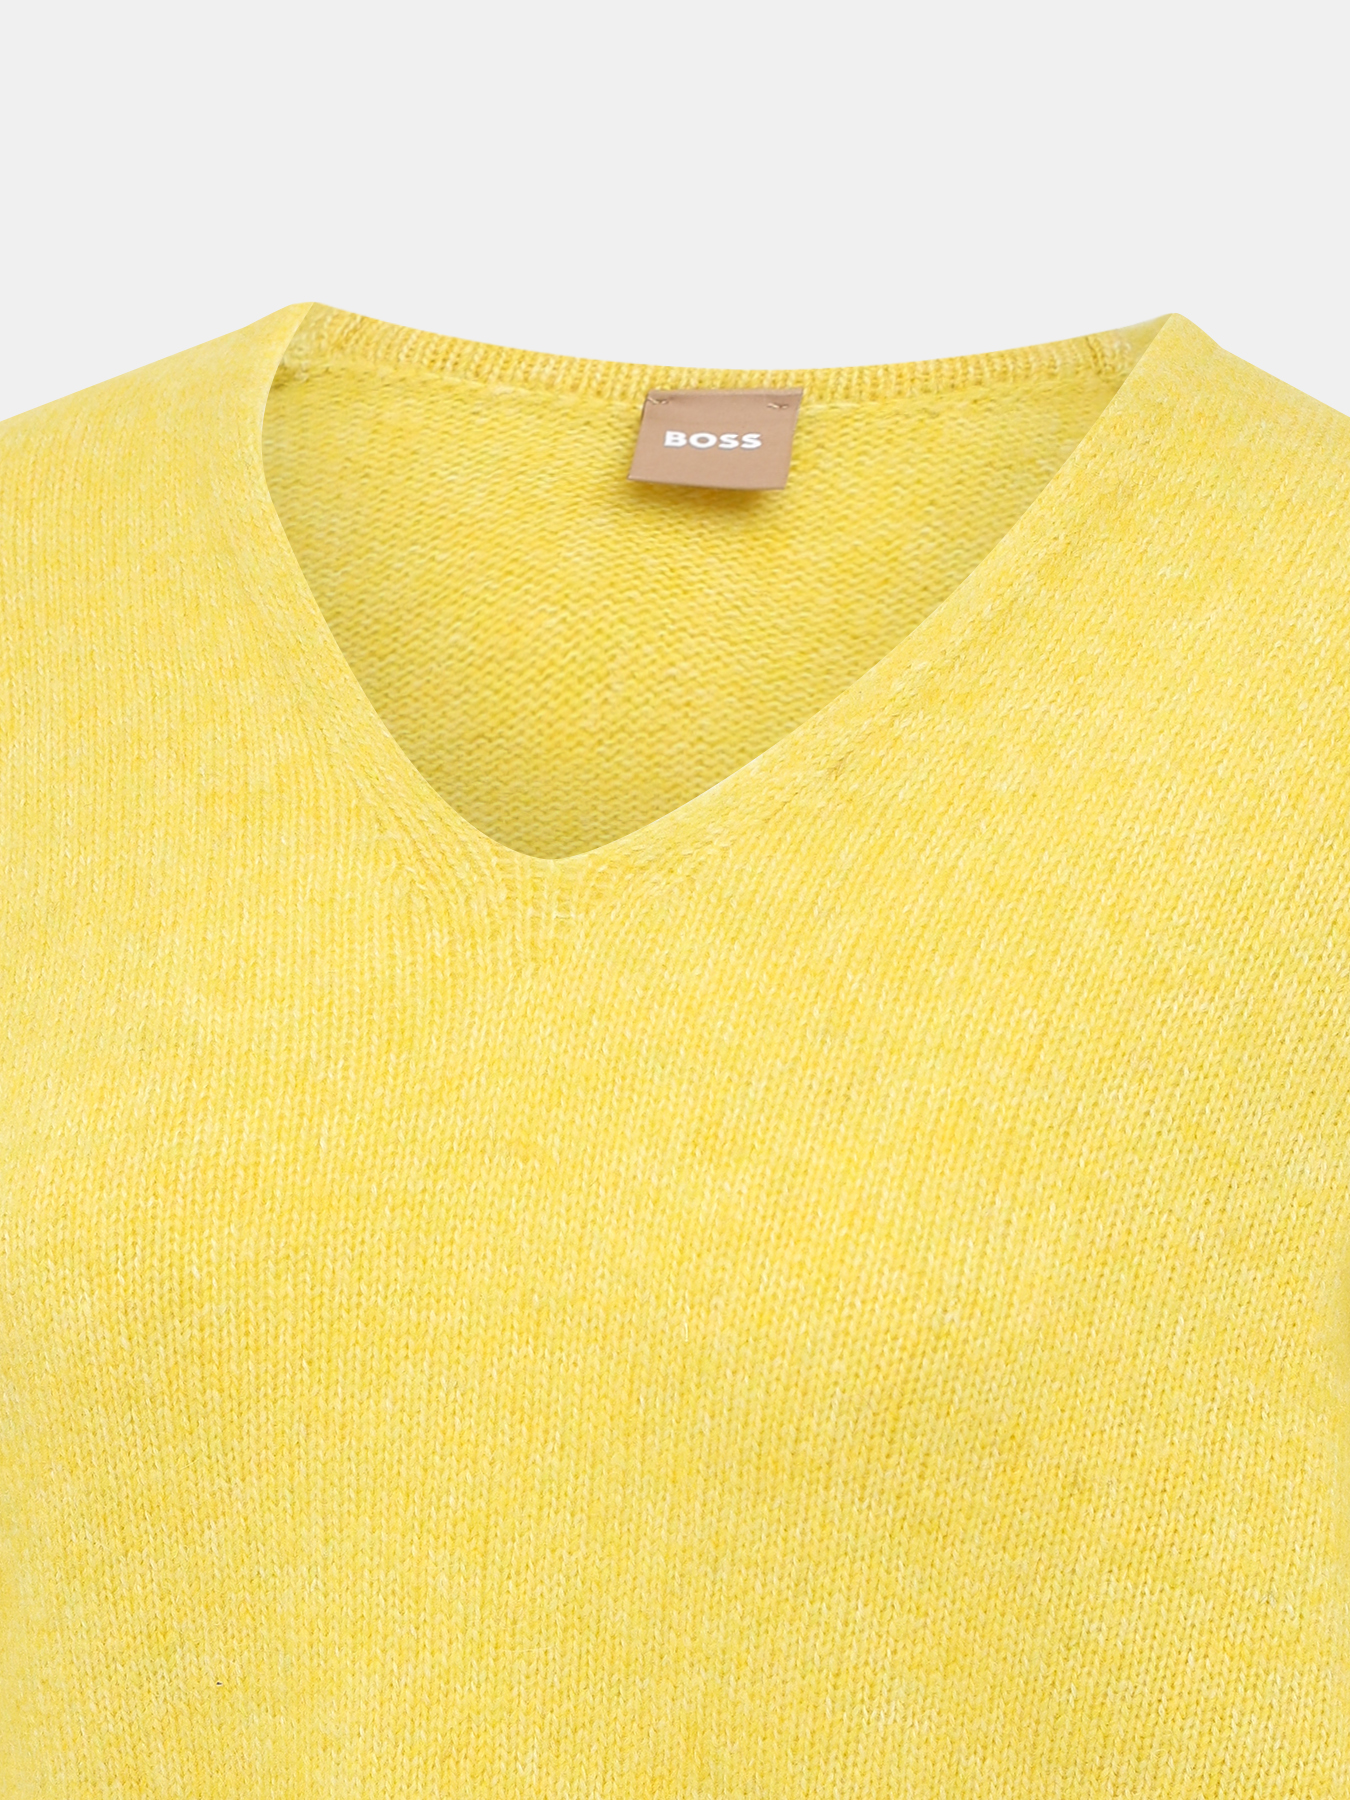 Пуловер Fondianan BOSS 437016-044, цвет желтый, размер 46-48 - фото 3